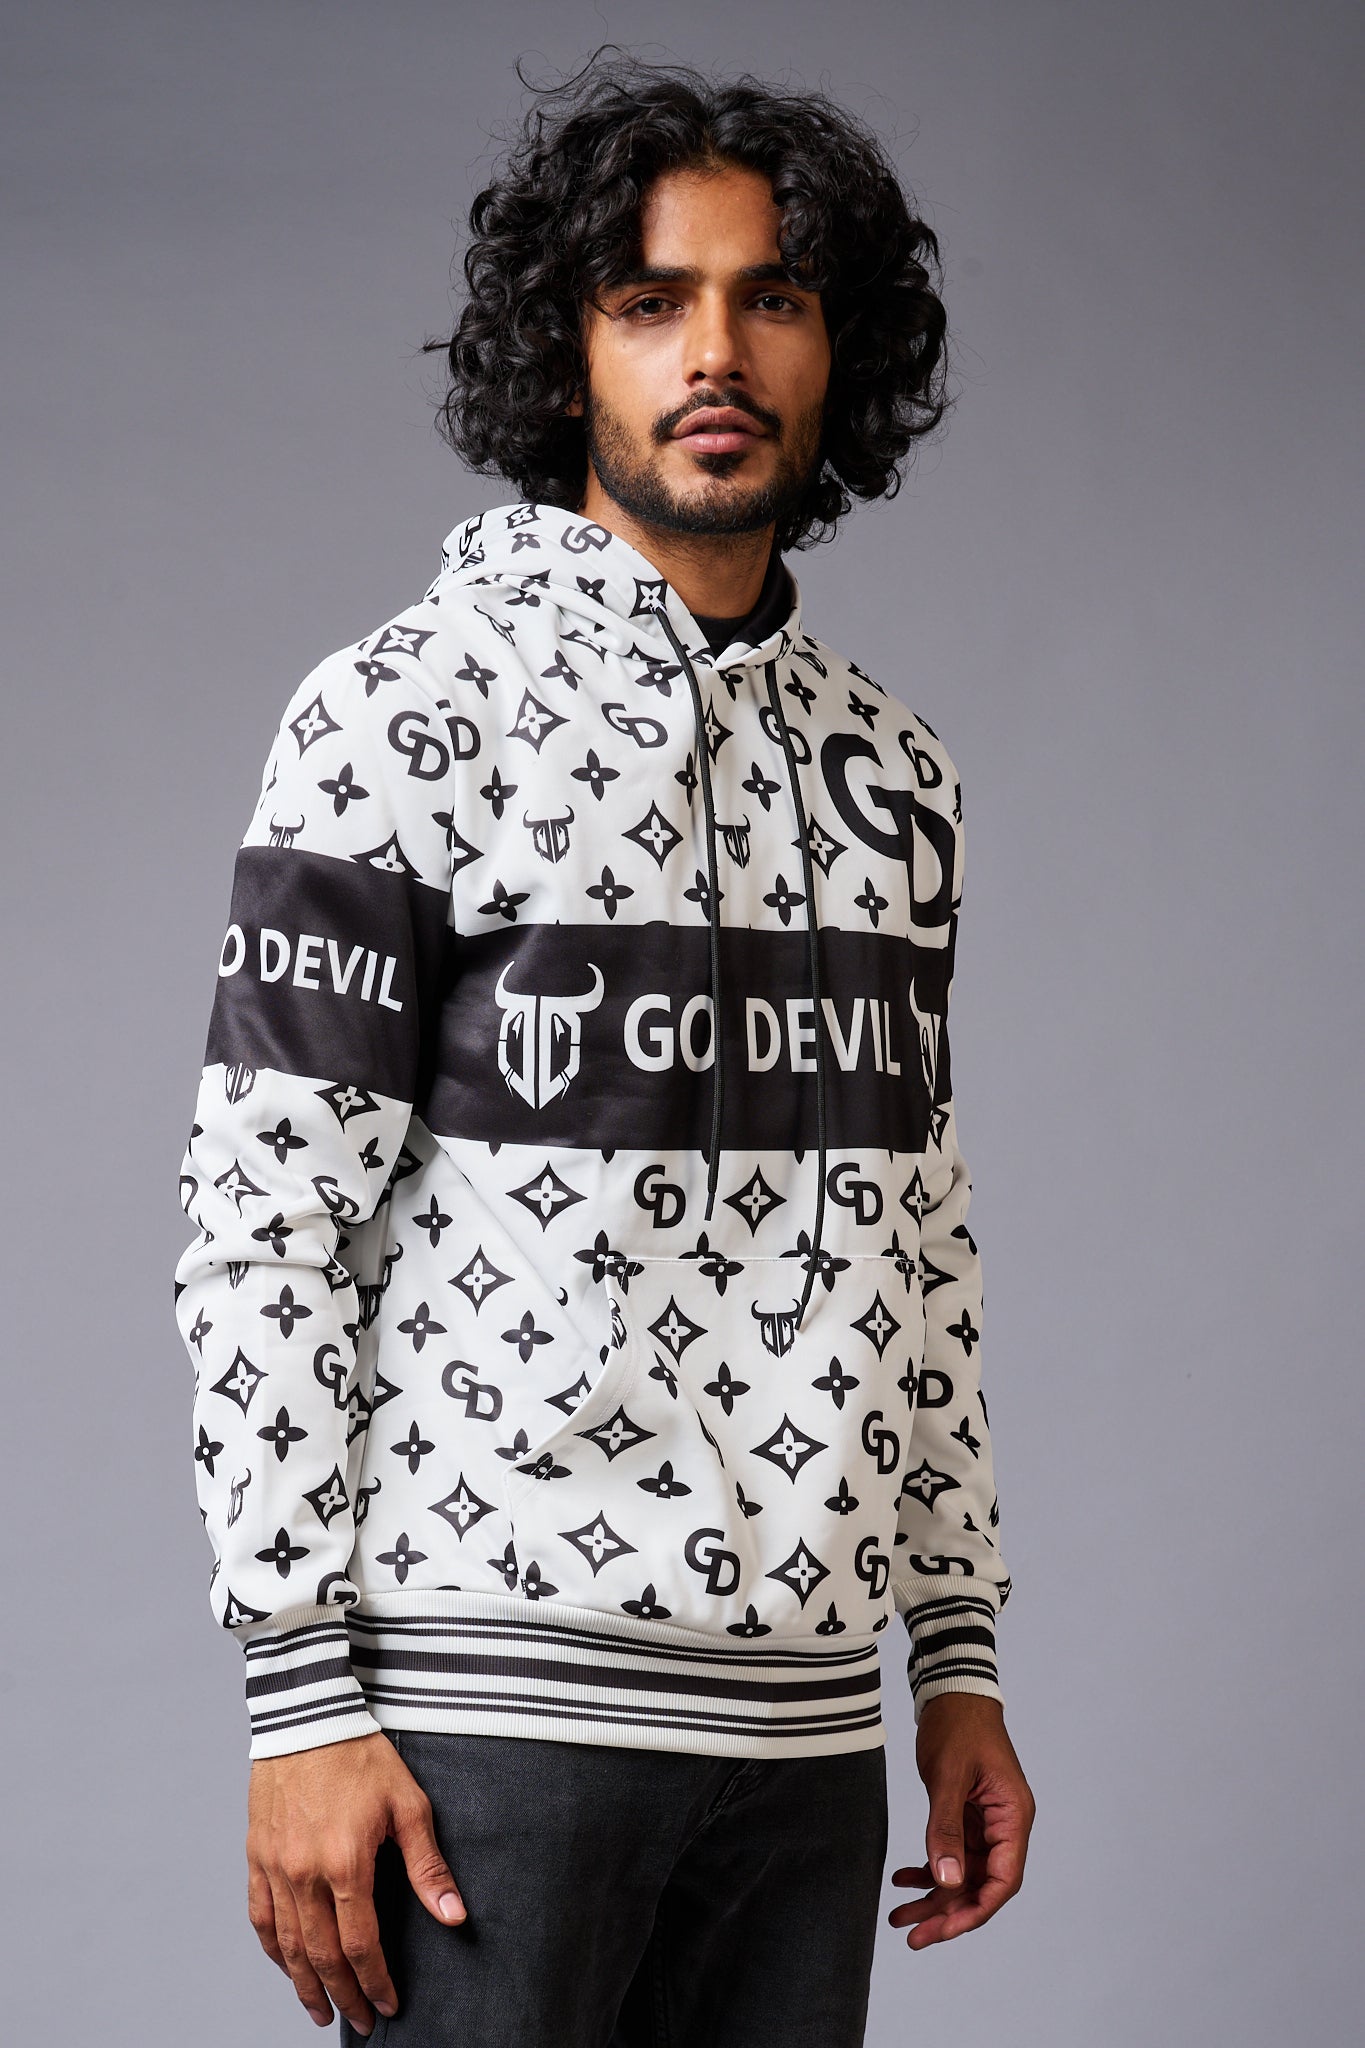 Go Devil Logo Printed Black & White Hoodie for Men - Go Devil